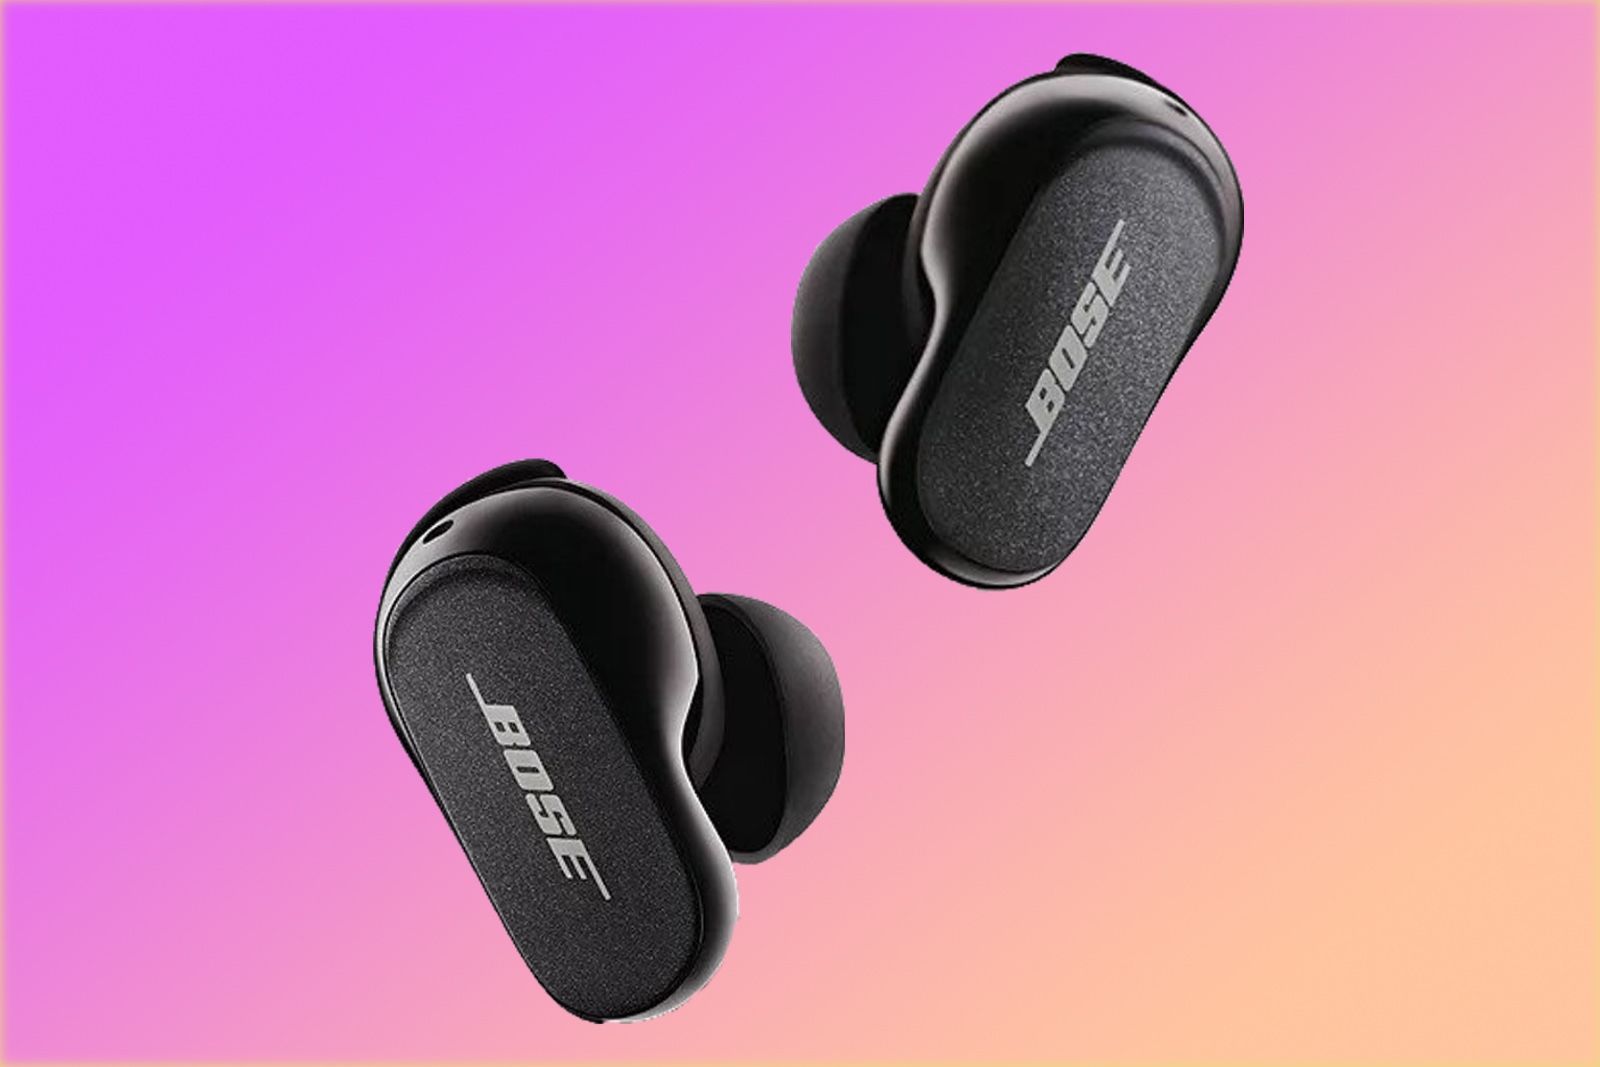 Desventajas de los auriculares Bluetooth: ¿merecen la pena?